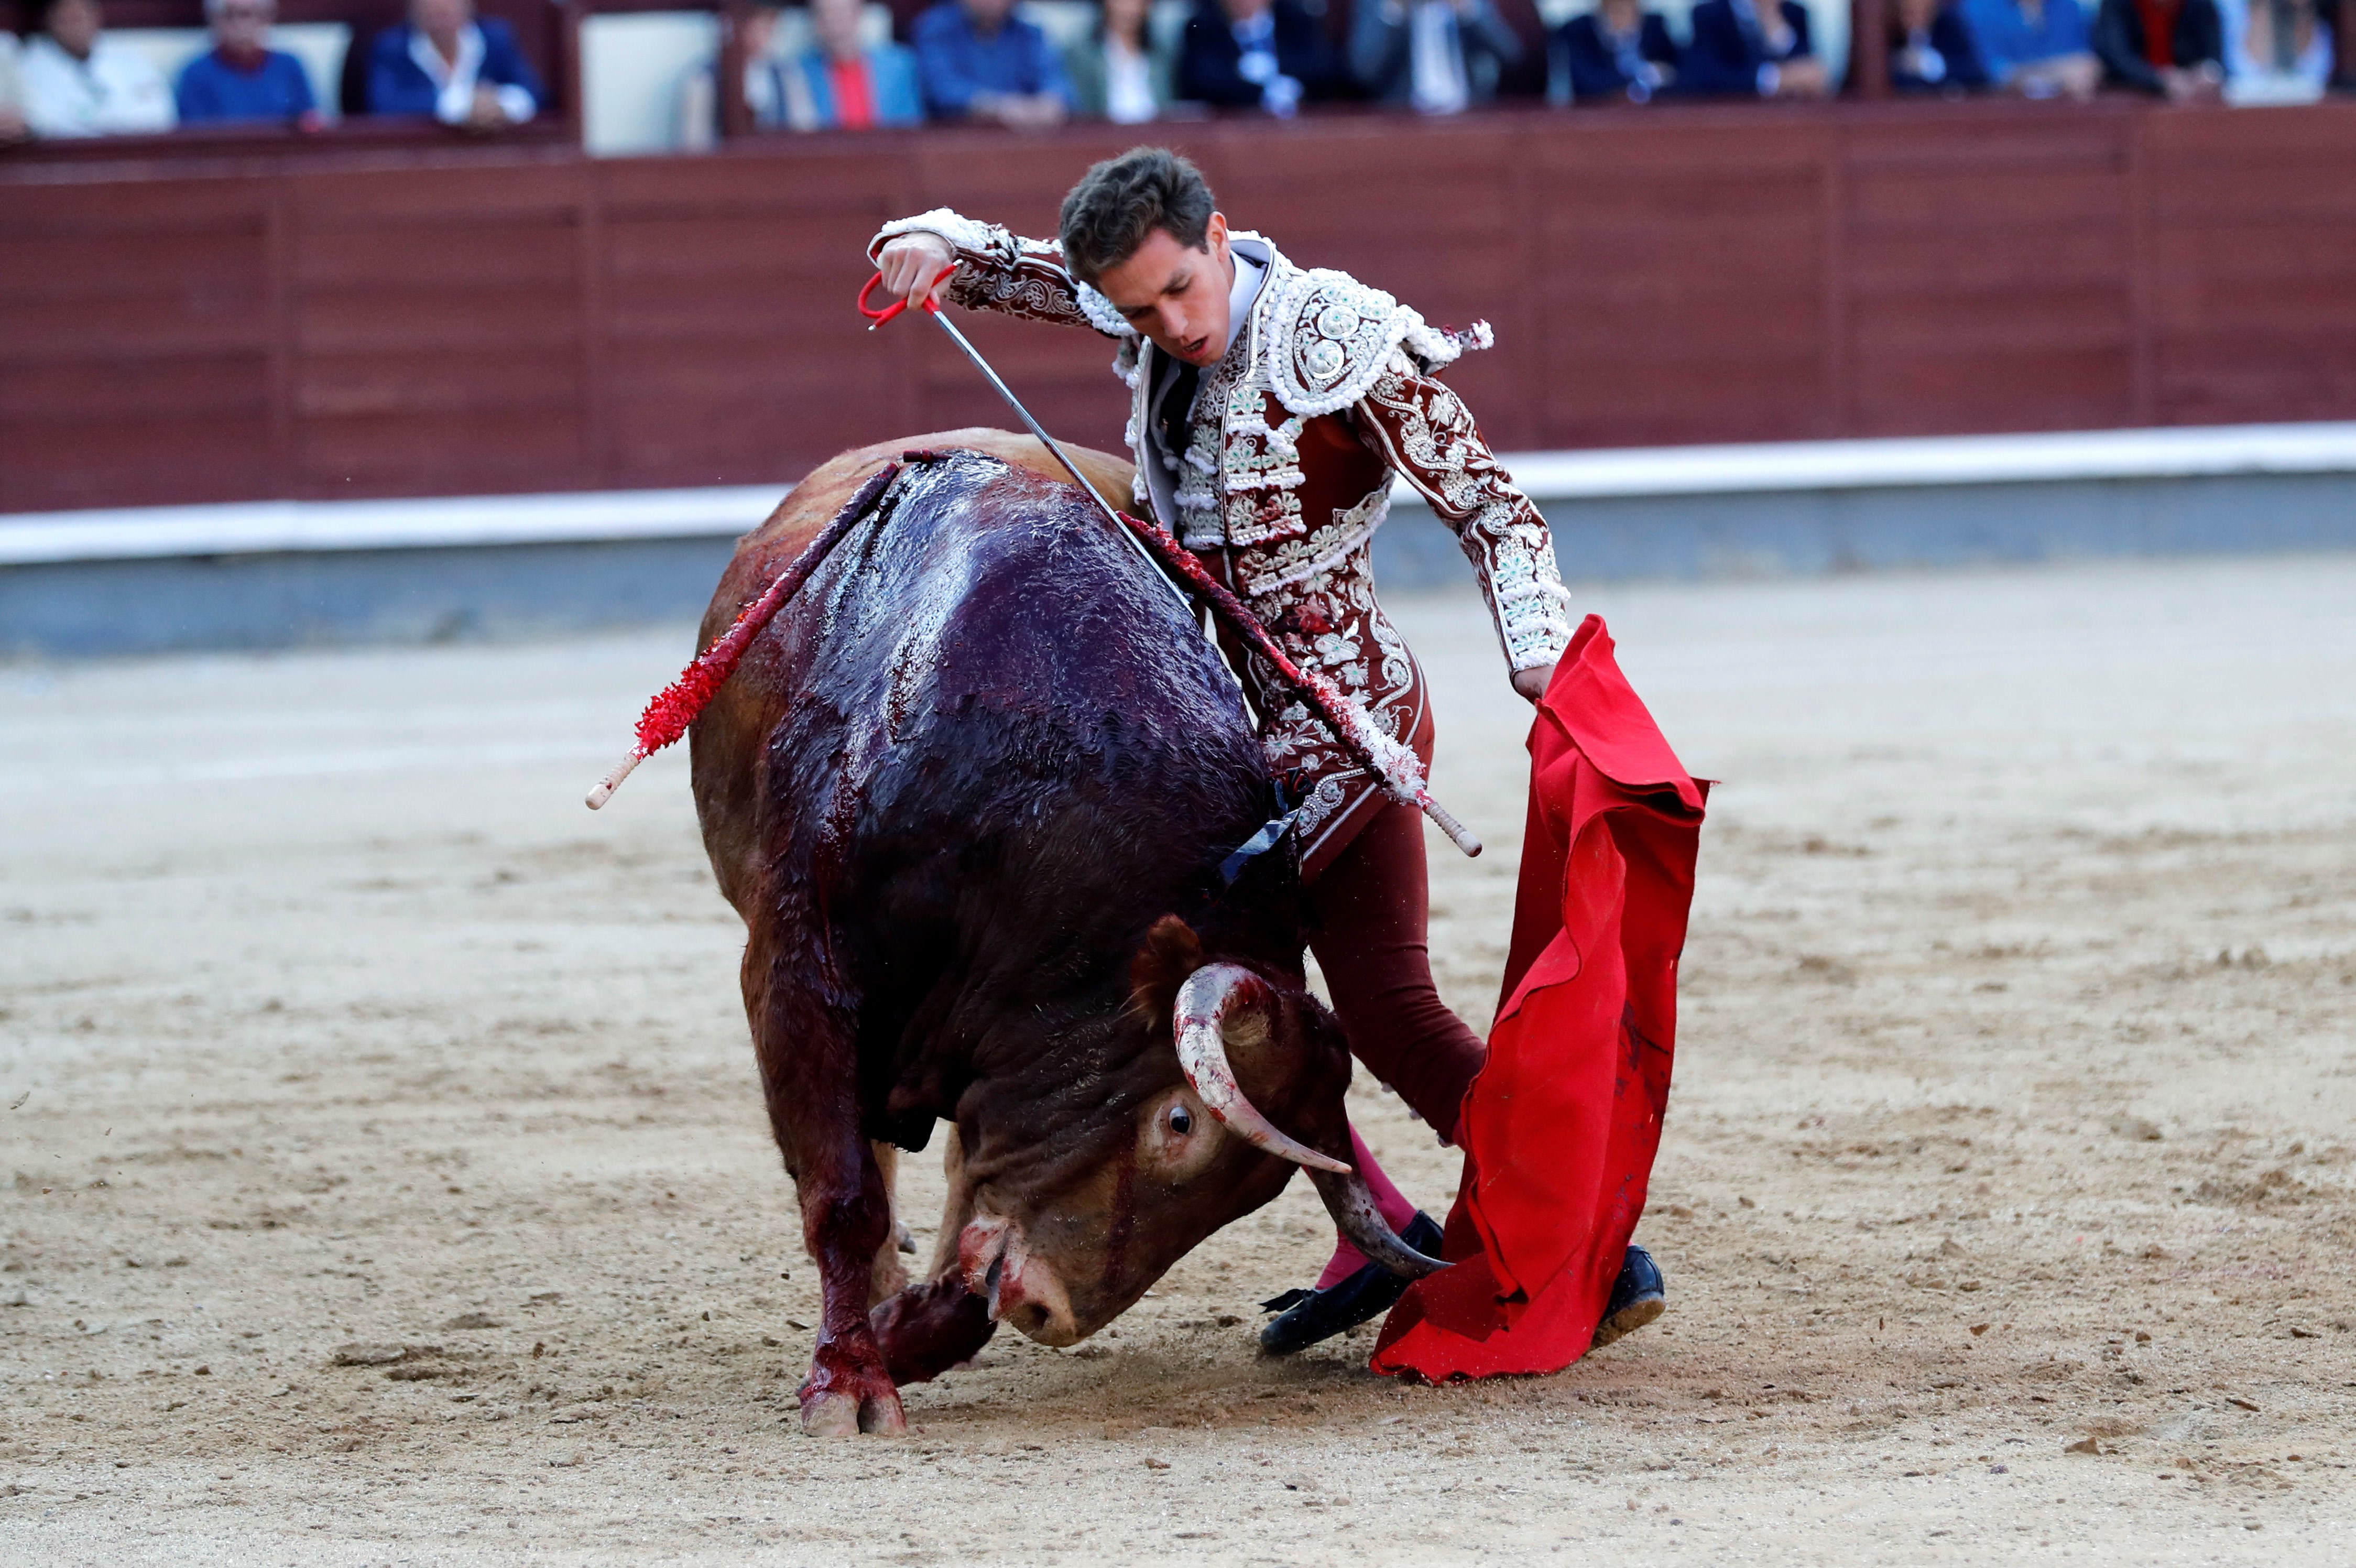 新华社照片,外代,2019年6月6日6月5日,在西班牙马德里,一名斗牛士在圣